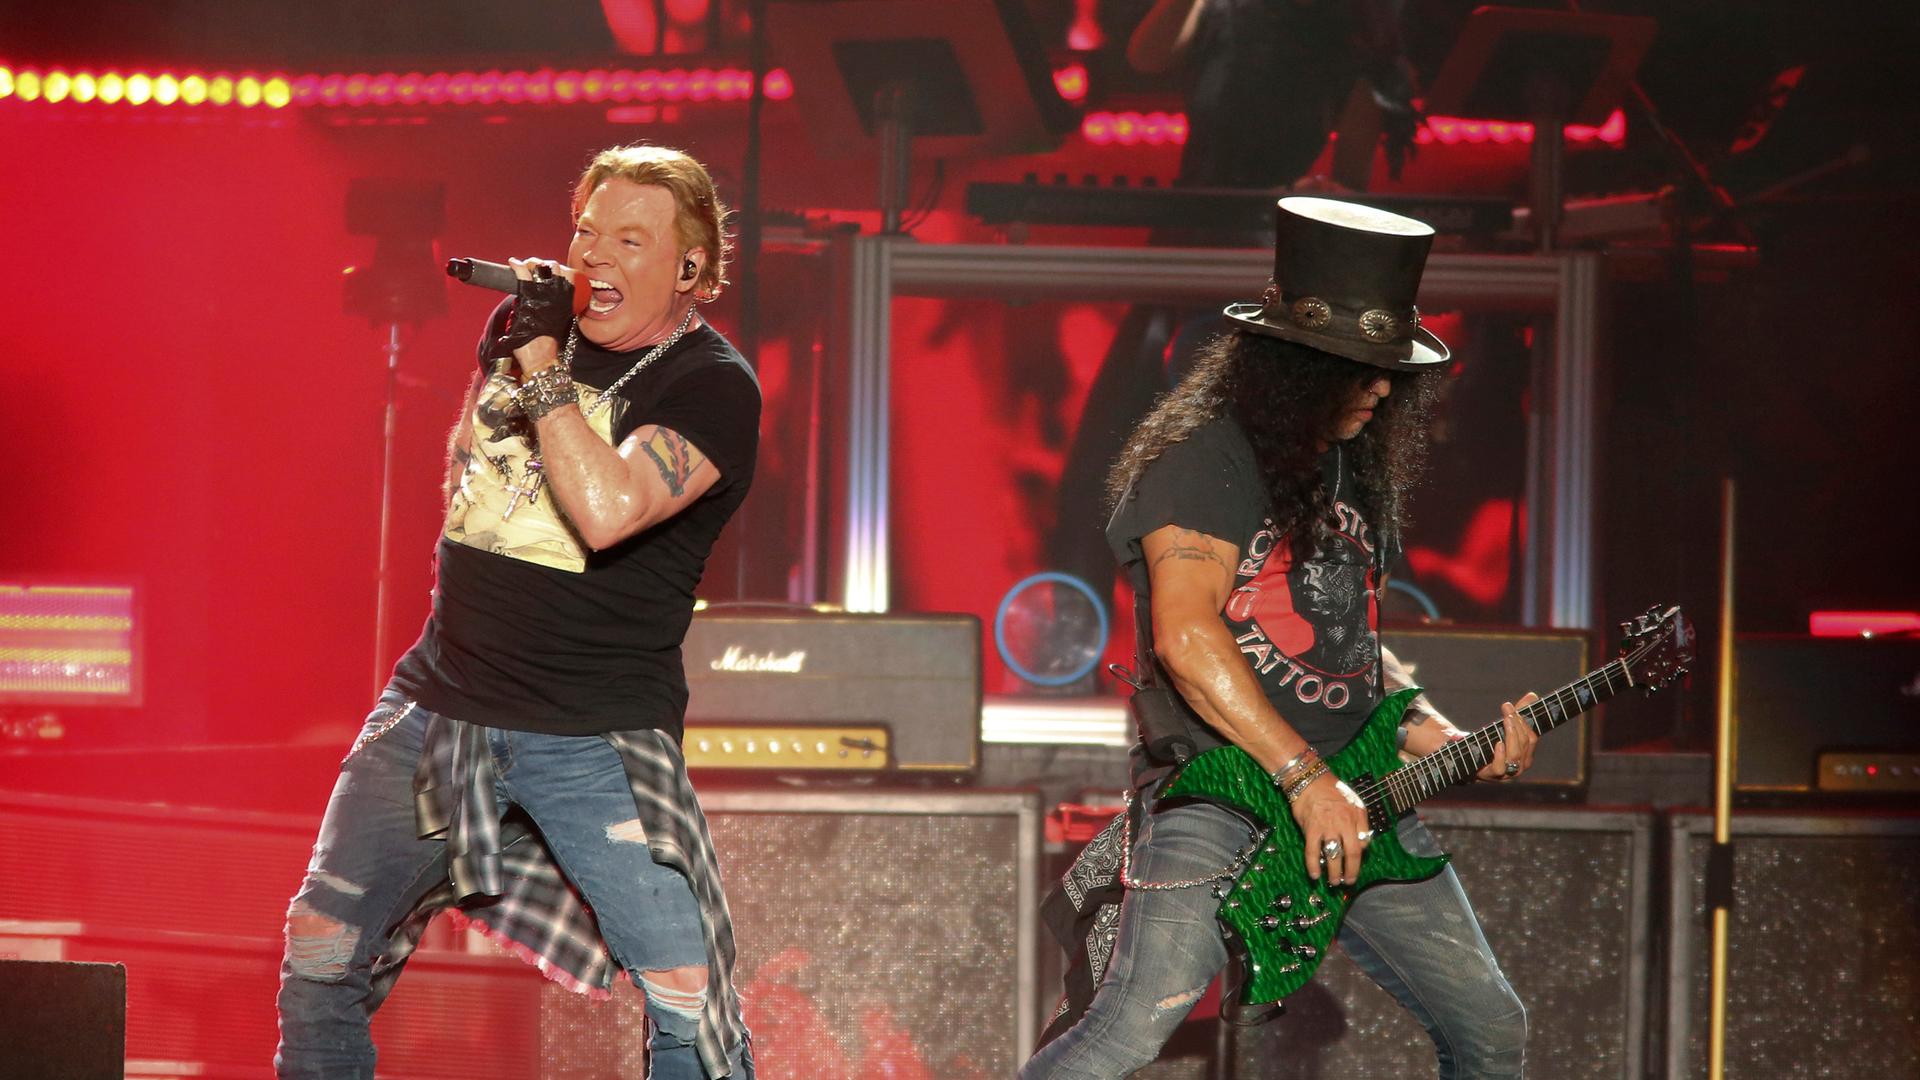 Axl Rose und Slash von Guns N’ Roses bei einem Konzert auf der Bühne.